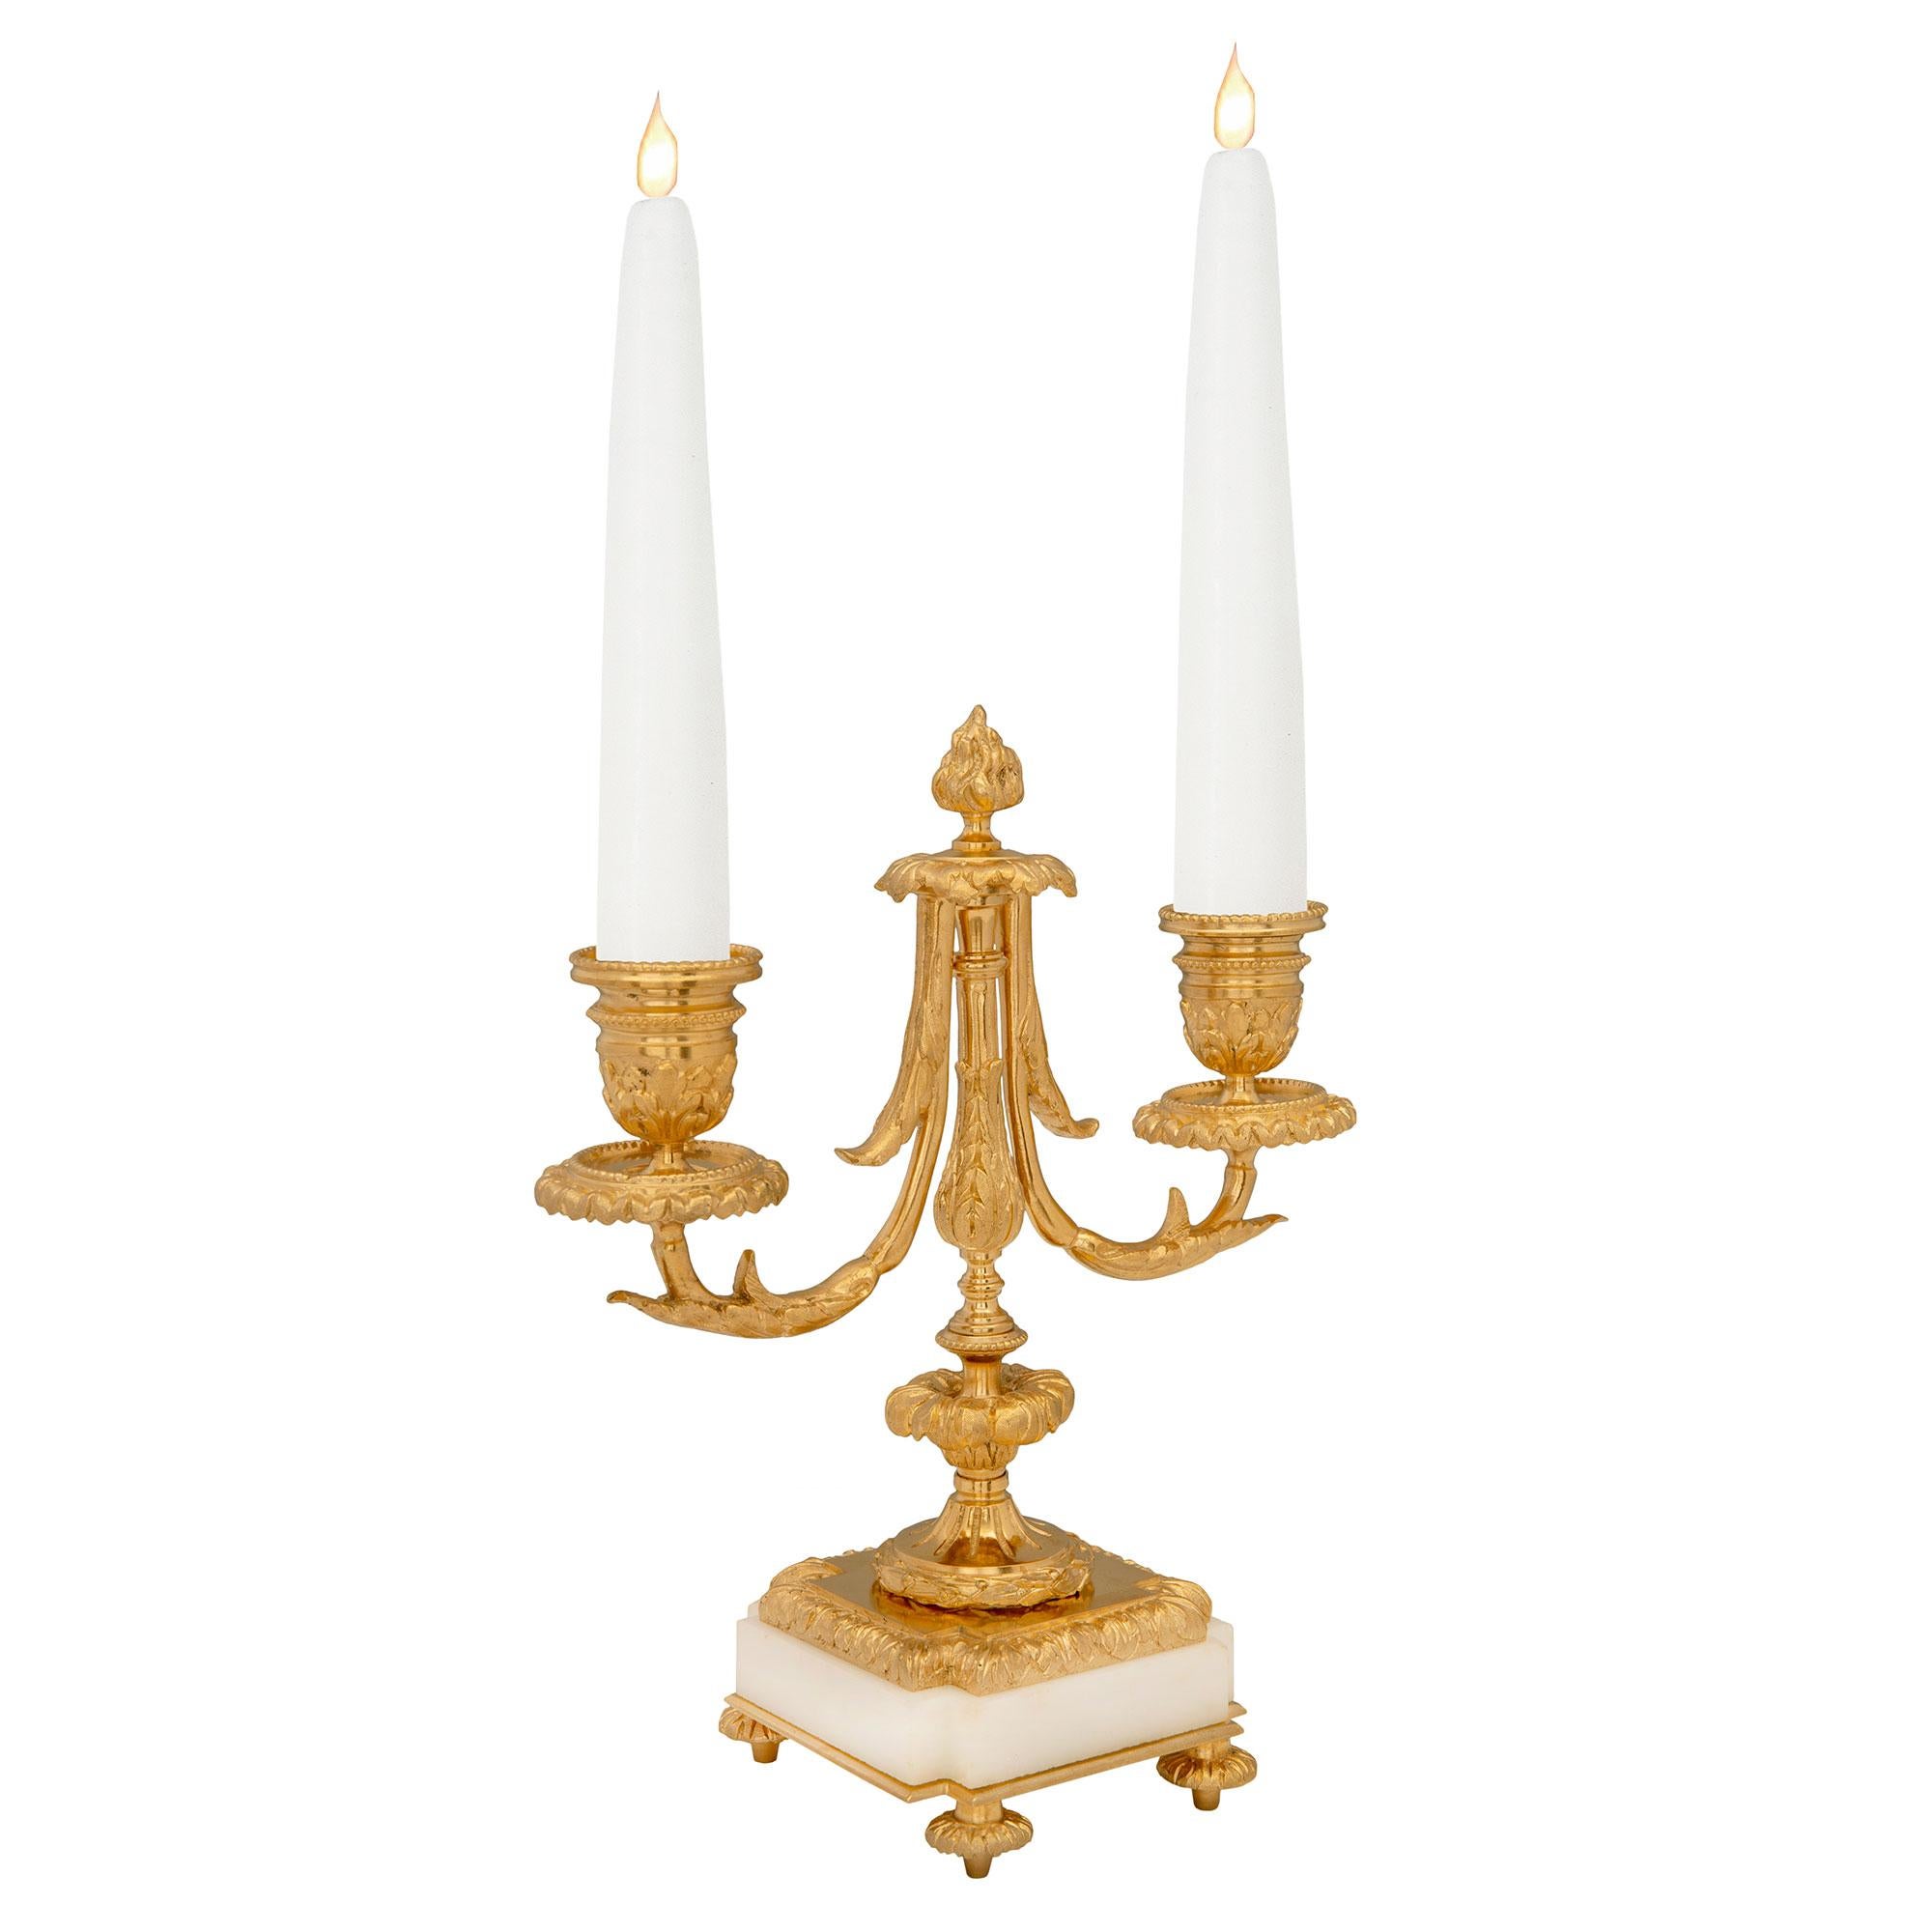 Une charmante et très élégante paire de candélabres à deux bras en marbre blanc de Carrare et bronze doré de style Louis XVI du 19ème siècle. Chaque candélabre est surélevé par de fins pieds en forme de topie, sous de remarquables bases carrées en